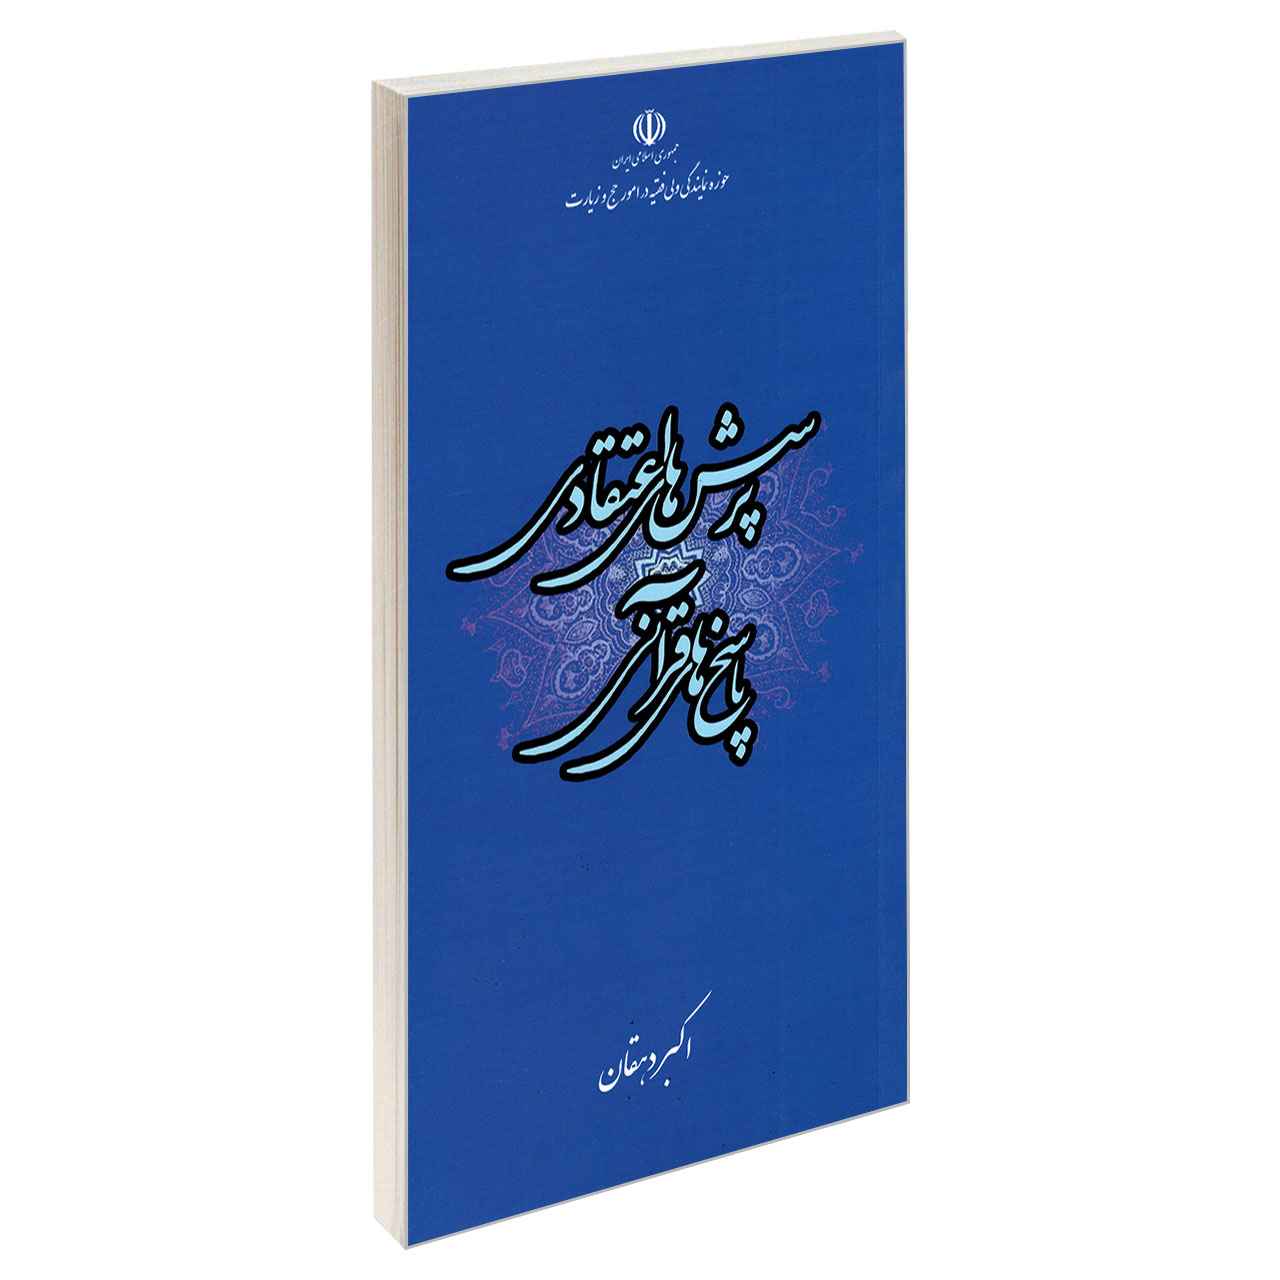 کتاب پرسش های اعتقادی پاسخ های قرآنی اثر اکبر دهقان نشر مشعر